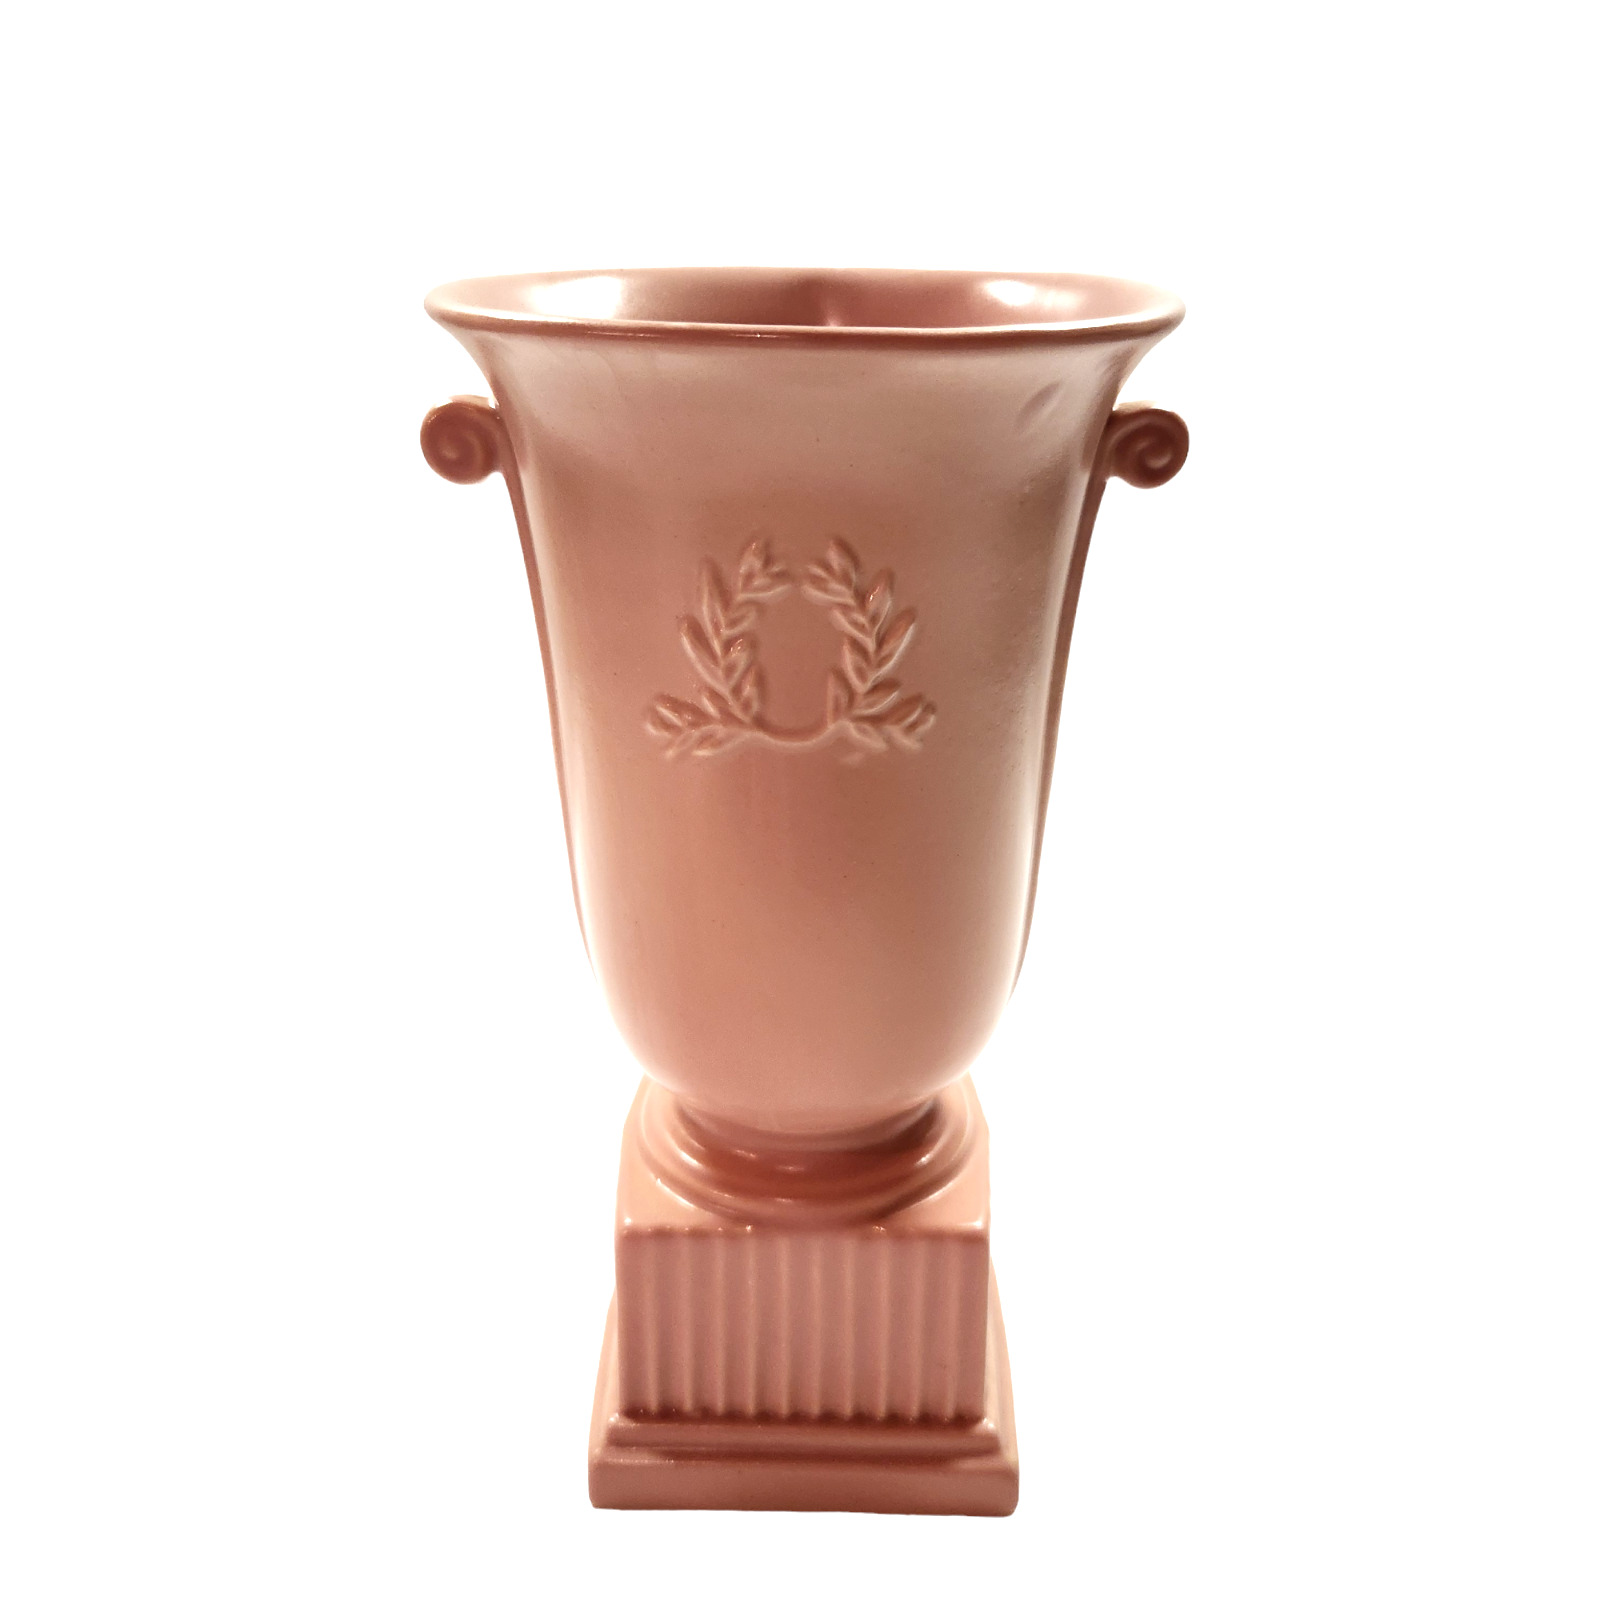 Vintage Abingdon USA Ceramic Pink Floral Greek Urn Shaped Vase Planter